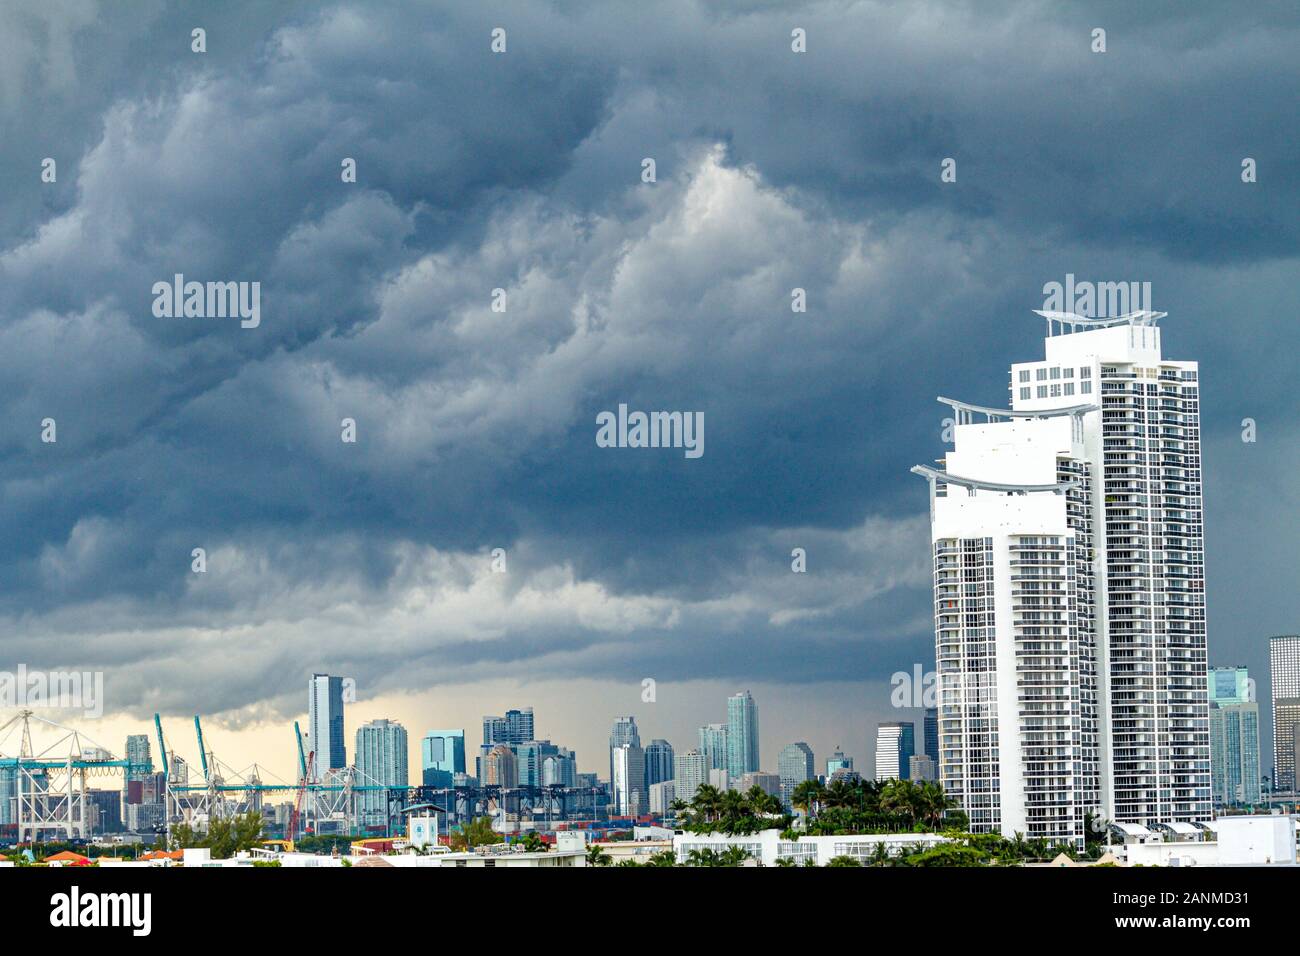 Miami Beach Florida, tempo, tempesta, nuvole scure, grattacielo alto grattacieli costruire edifici condominio residenziale appartamenti alloggio Foto Stock